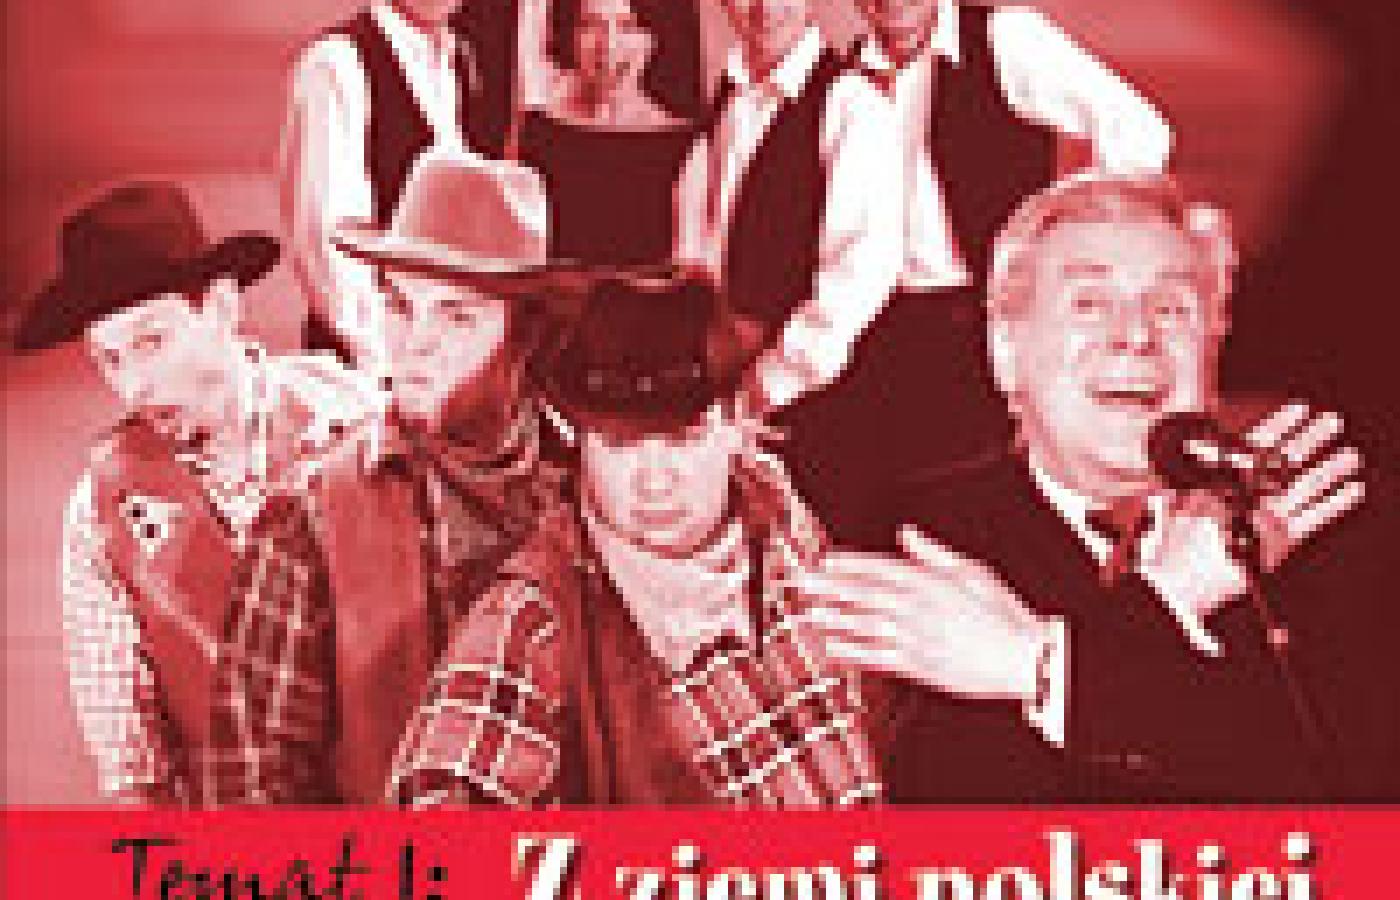 Tom I (Ko)lekcji polskich kabaretów.  Zamów całą (Ko)lekcję Polskich Kabaretów w sklepie internetowym.